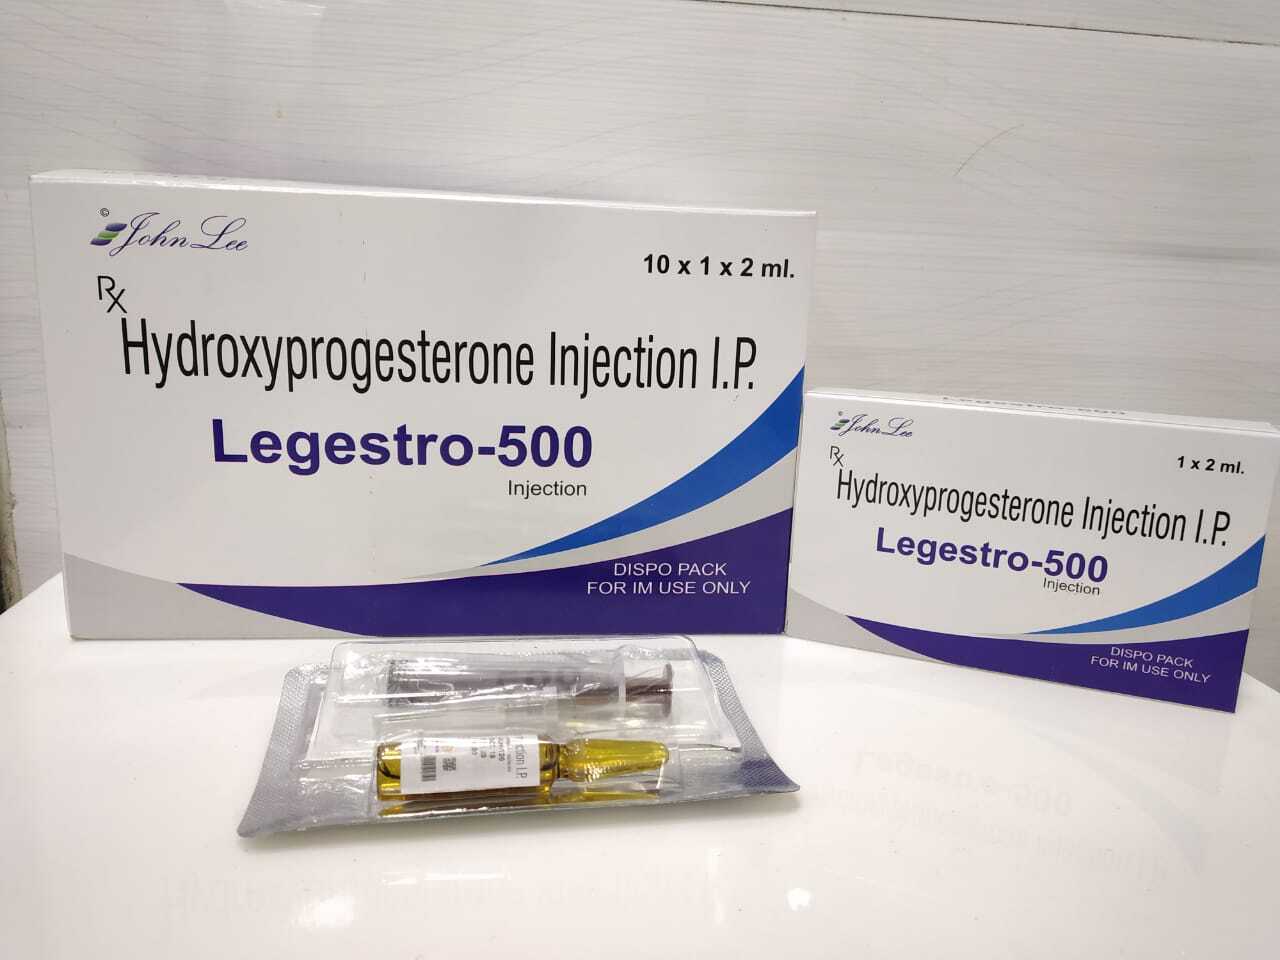 Hydroxy progesterone Injection